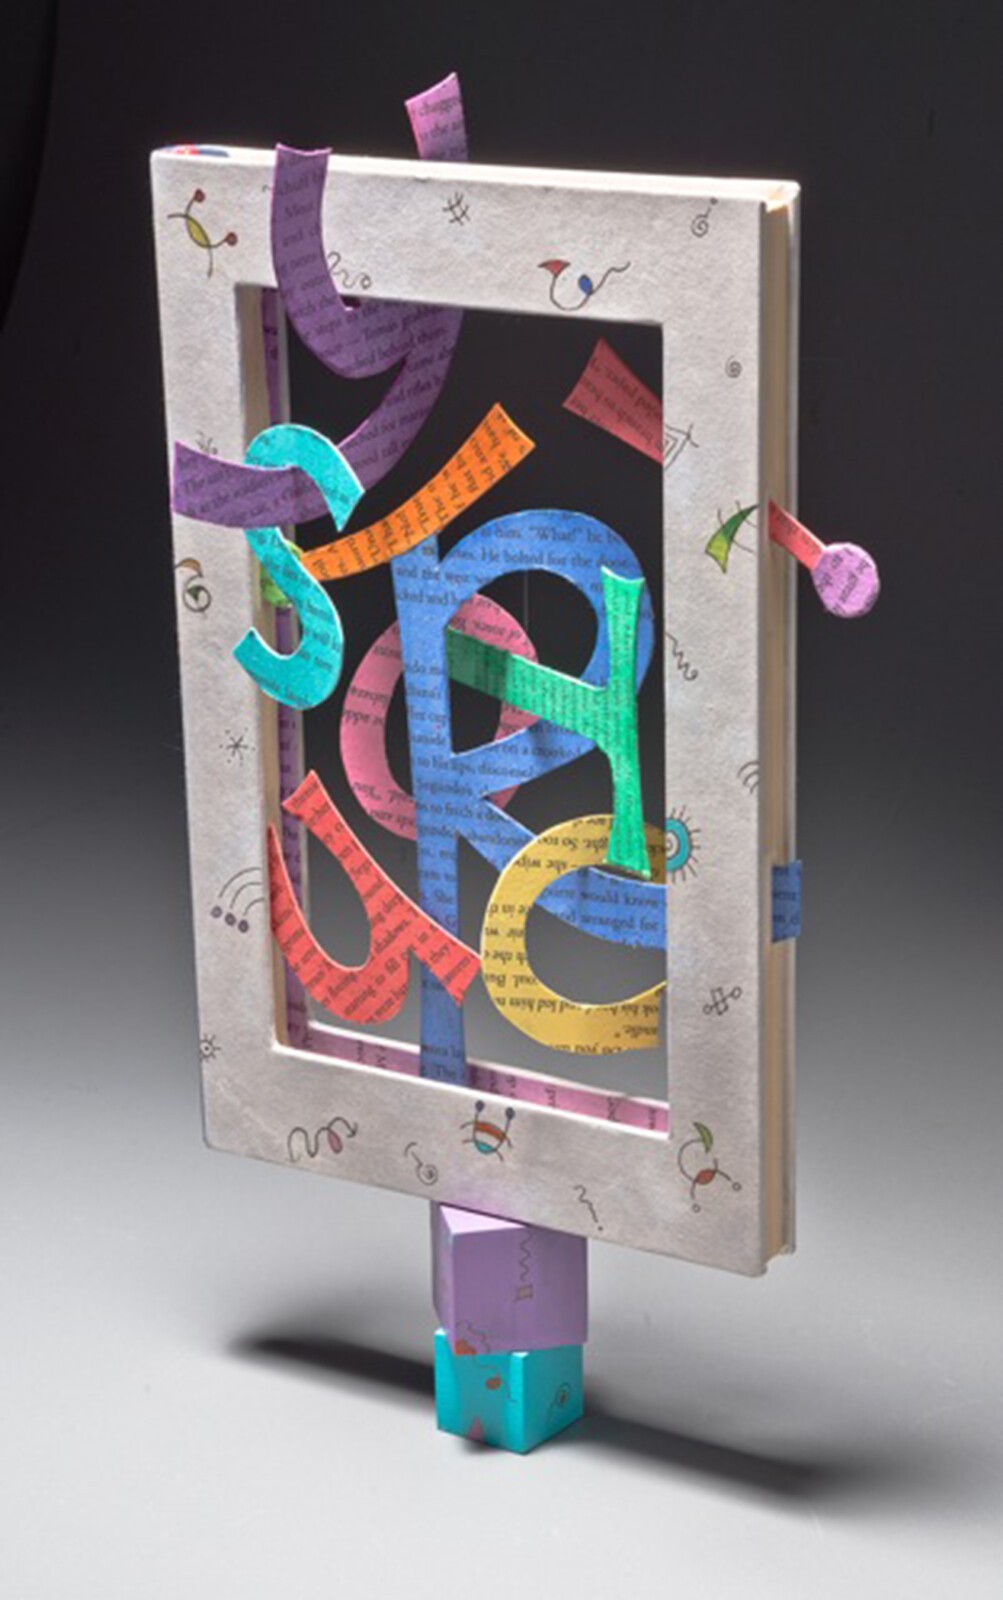 Jean-Marie Tarascio, C is for Curiosity, Altered discarded book, acrylics, wood